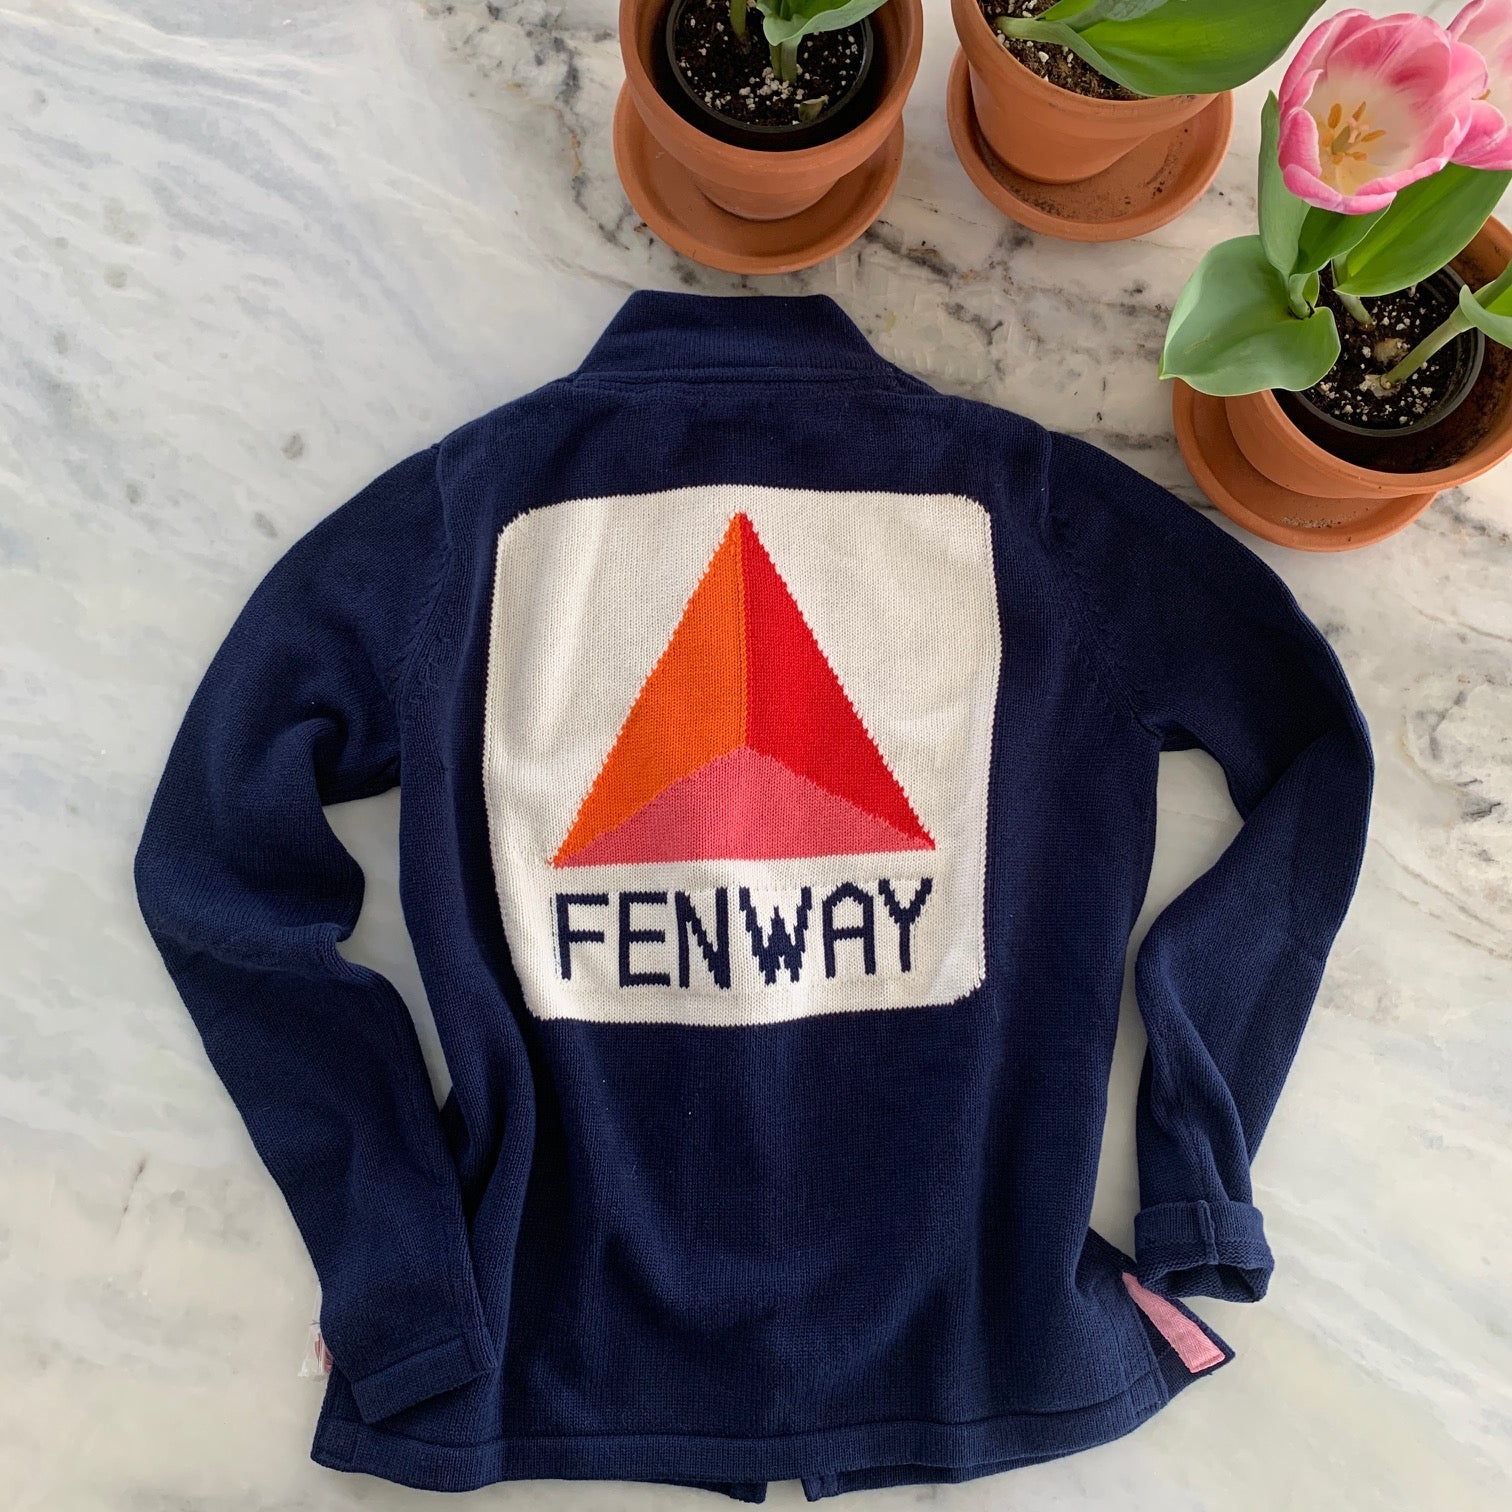 Fenway full zip sweater